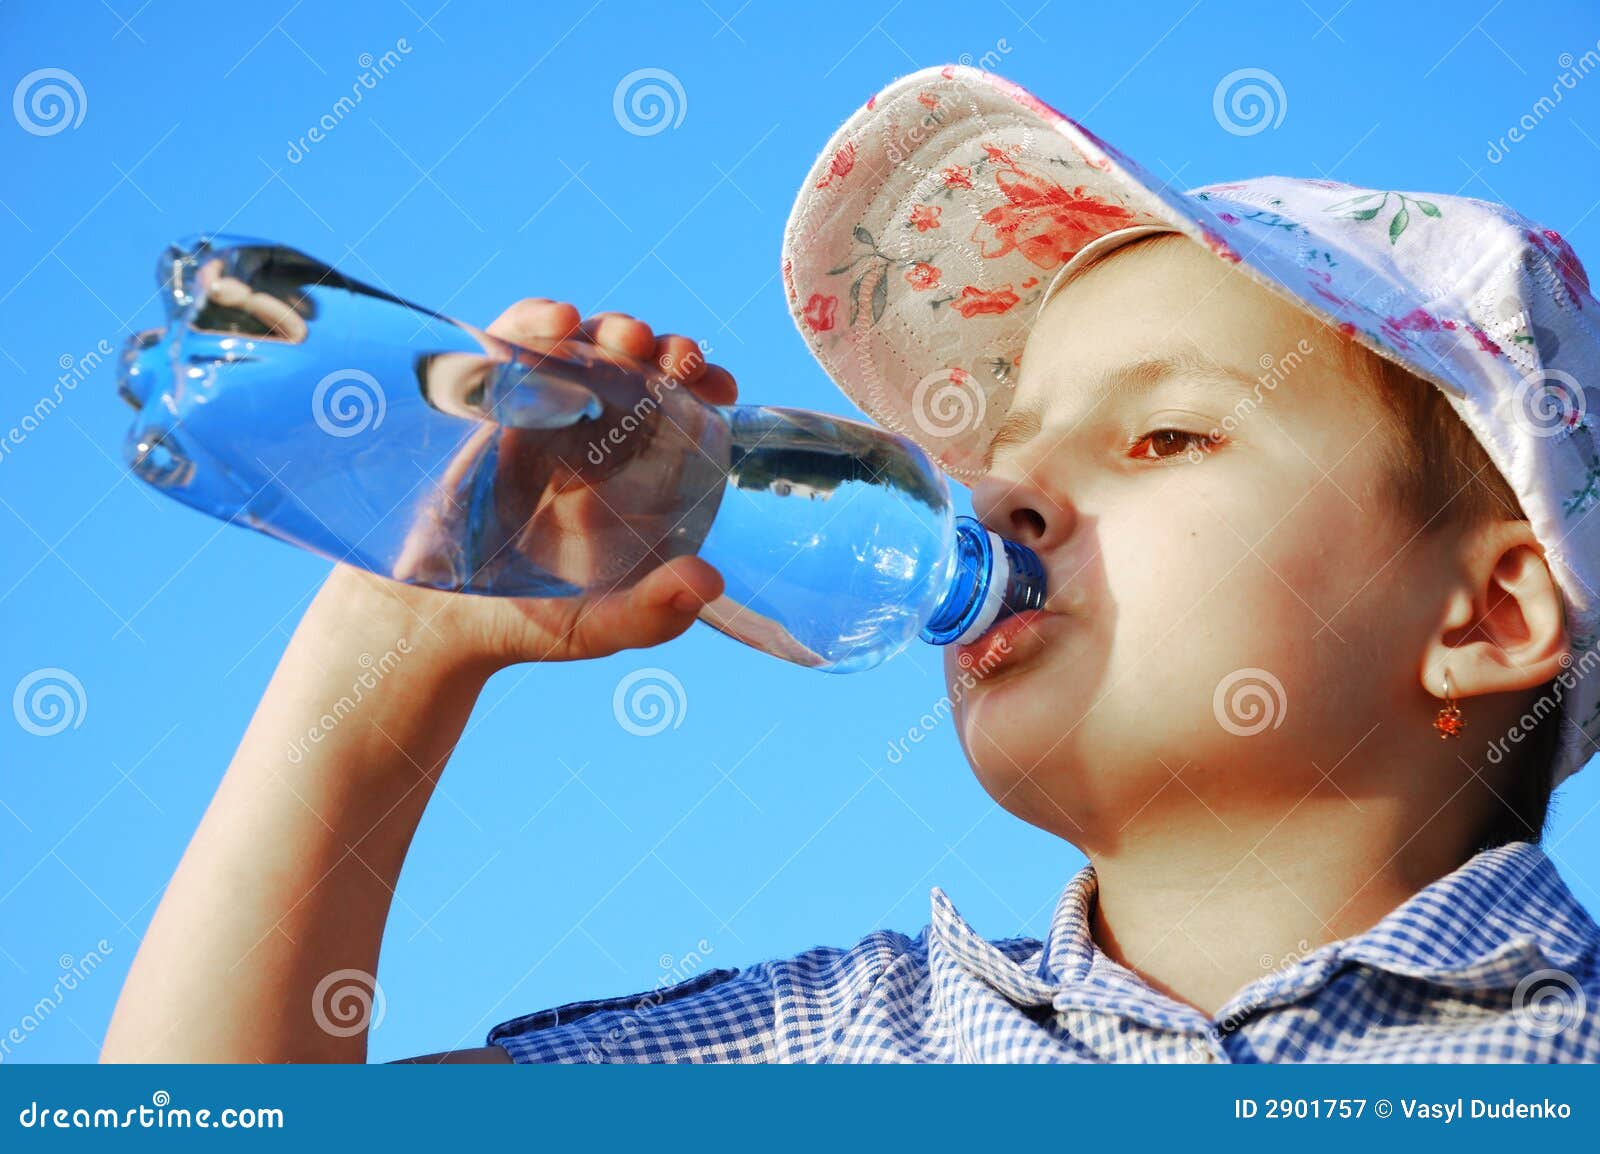 孩子爱上喝水，离不开这些秘密武器 - 居家 - 美丽人生